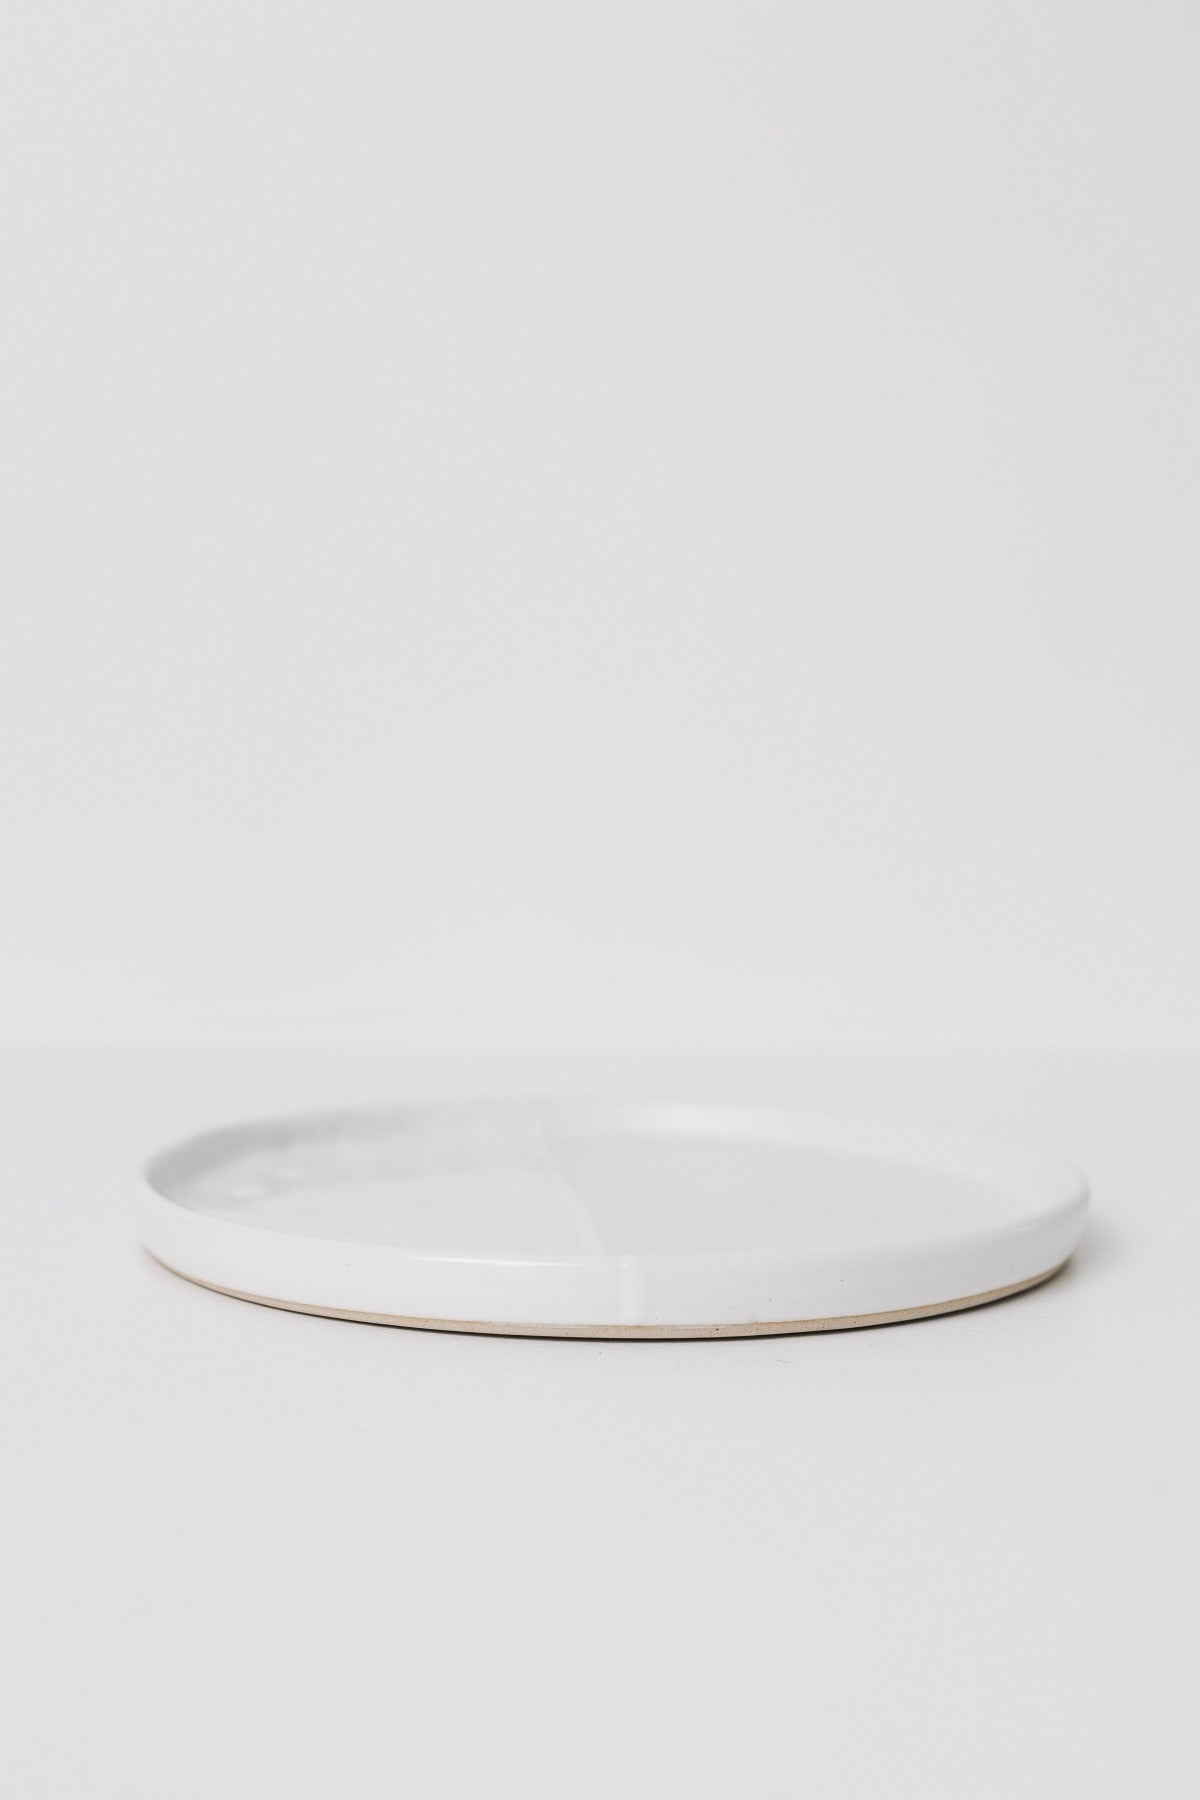 Sonnet Dinner Plate - Matte White/Glossy White - Set of 6